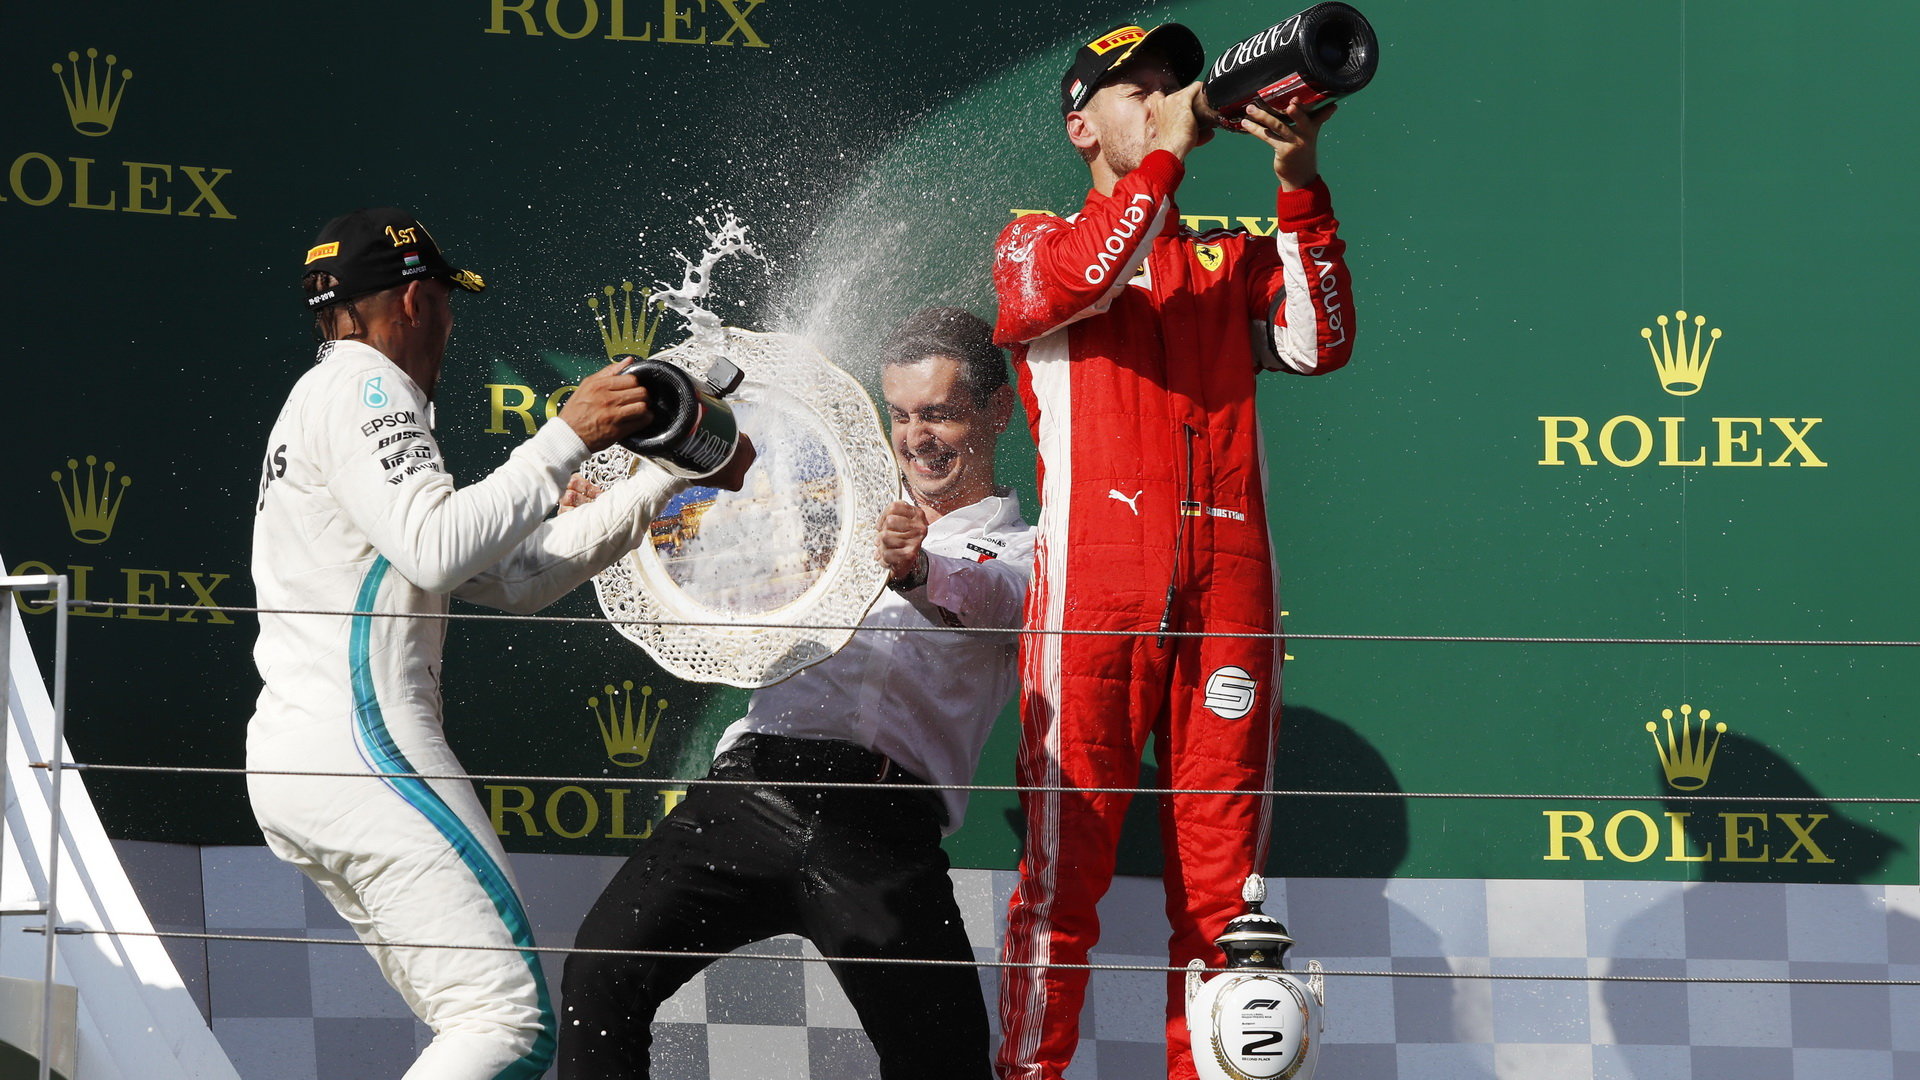 Radost na pódiu v Maďarsku, po startu z pole-position Vettel na vítězství šanci neměl